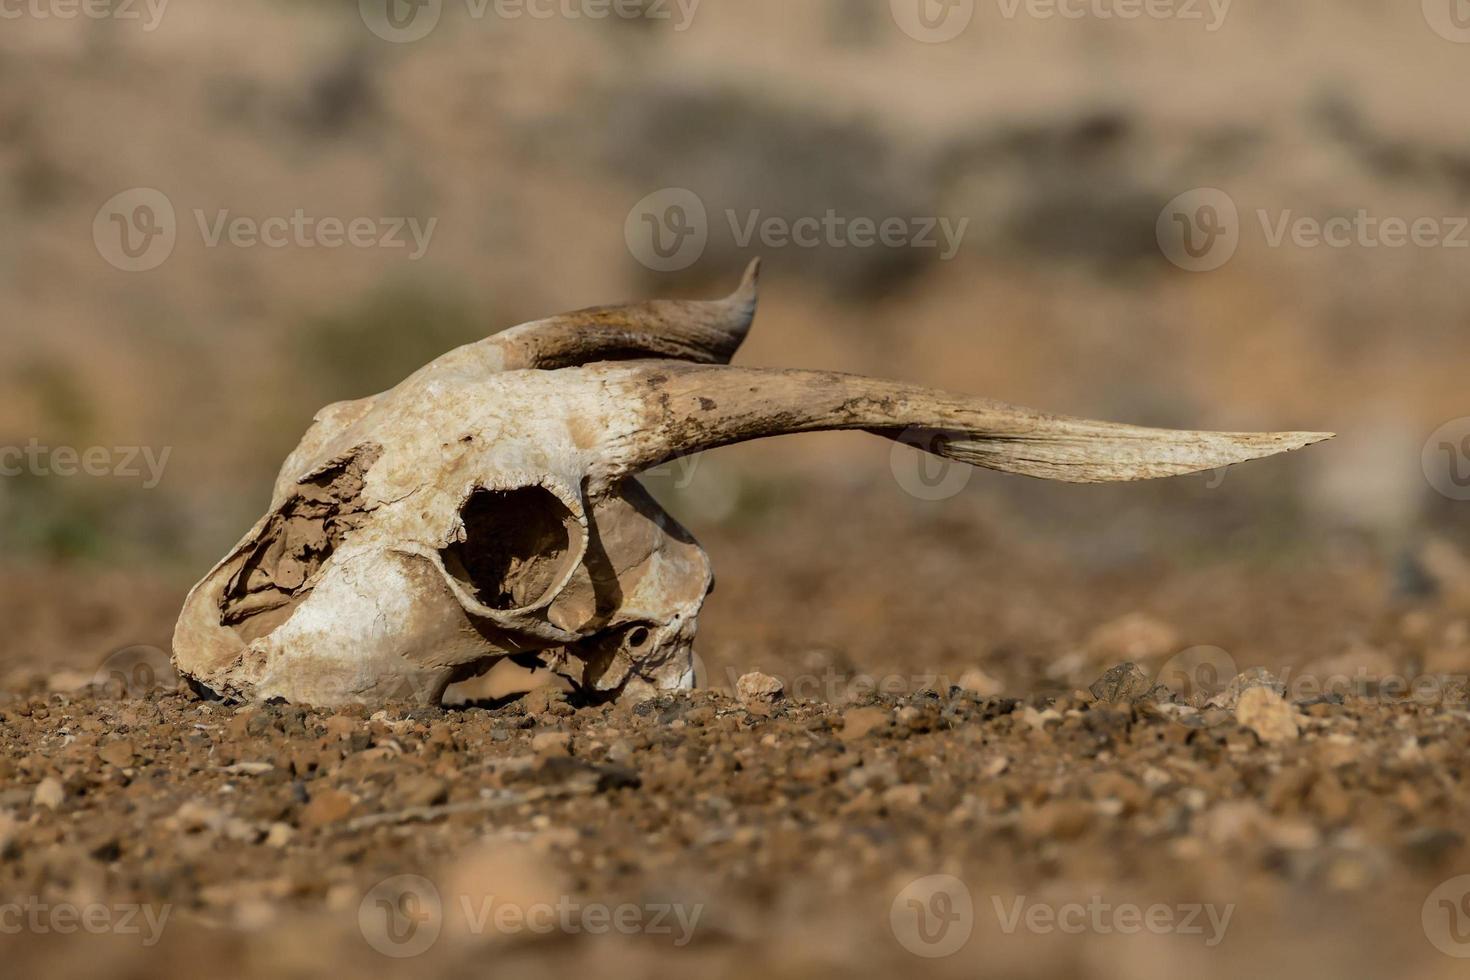 crâne de chèvre au sol photo